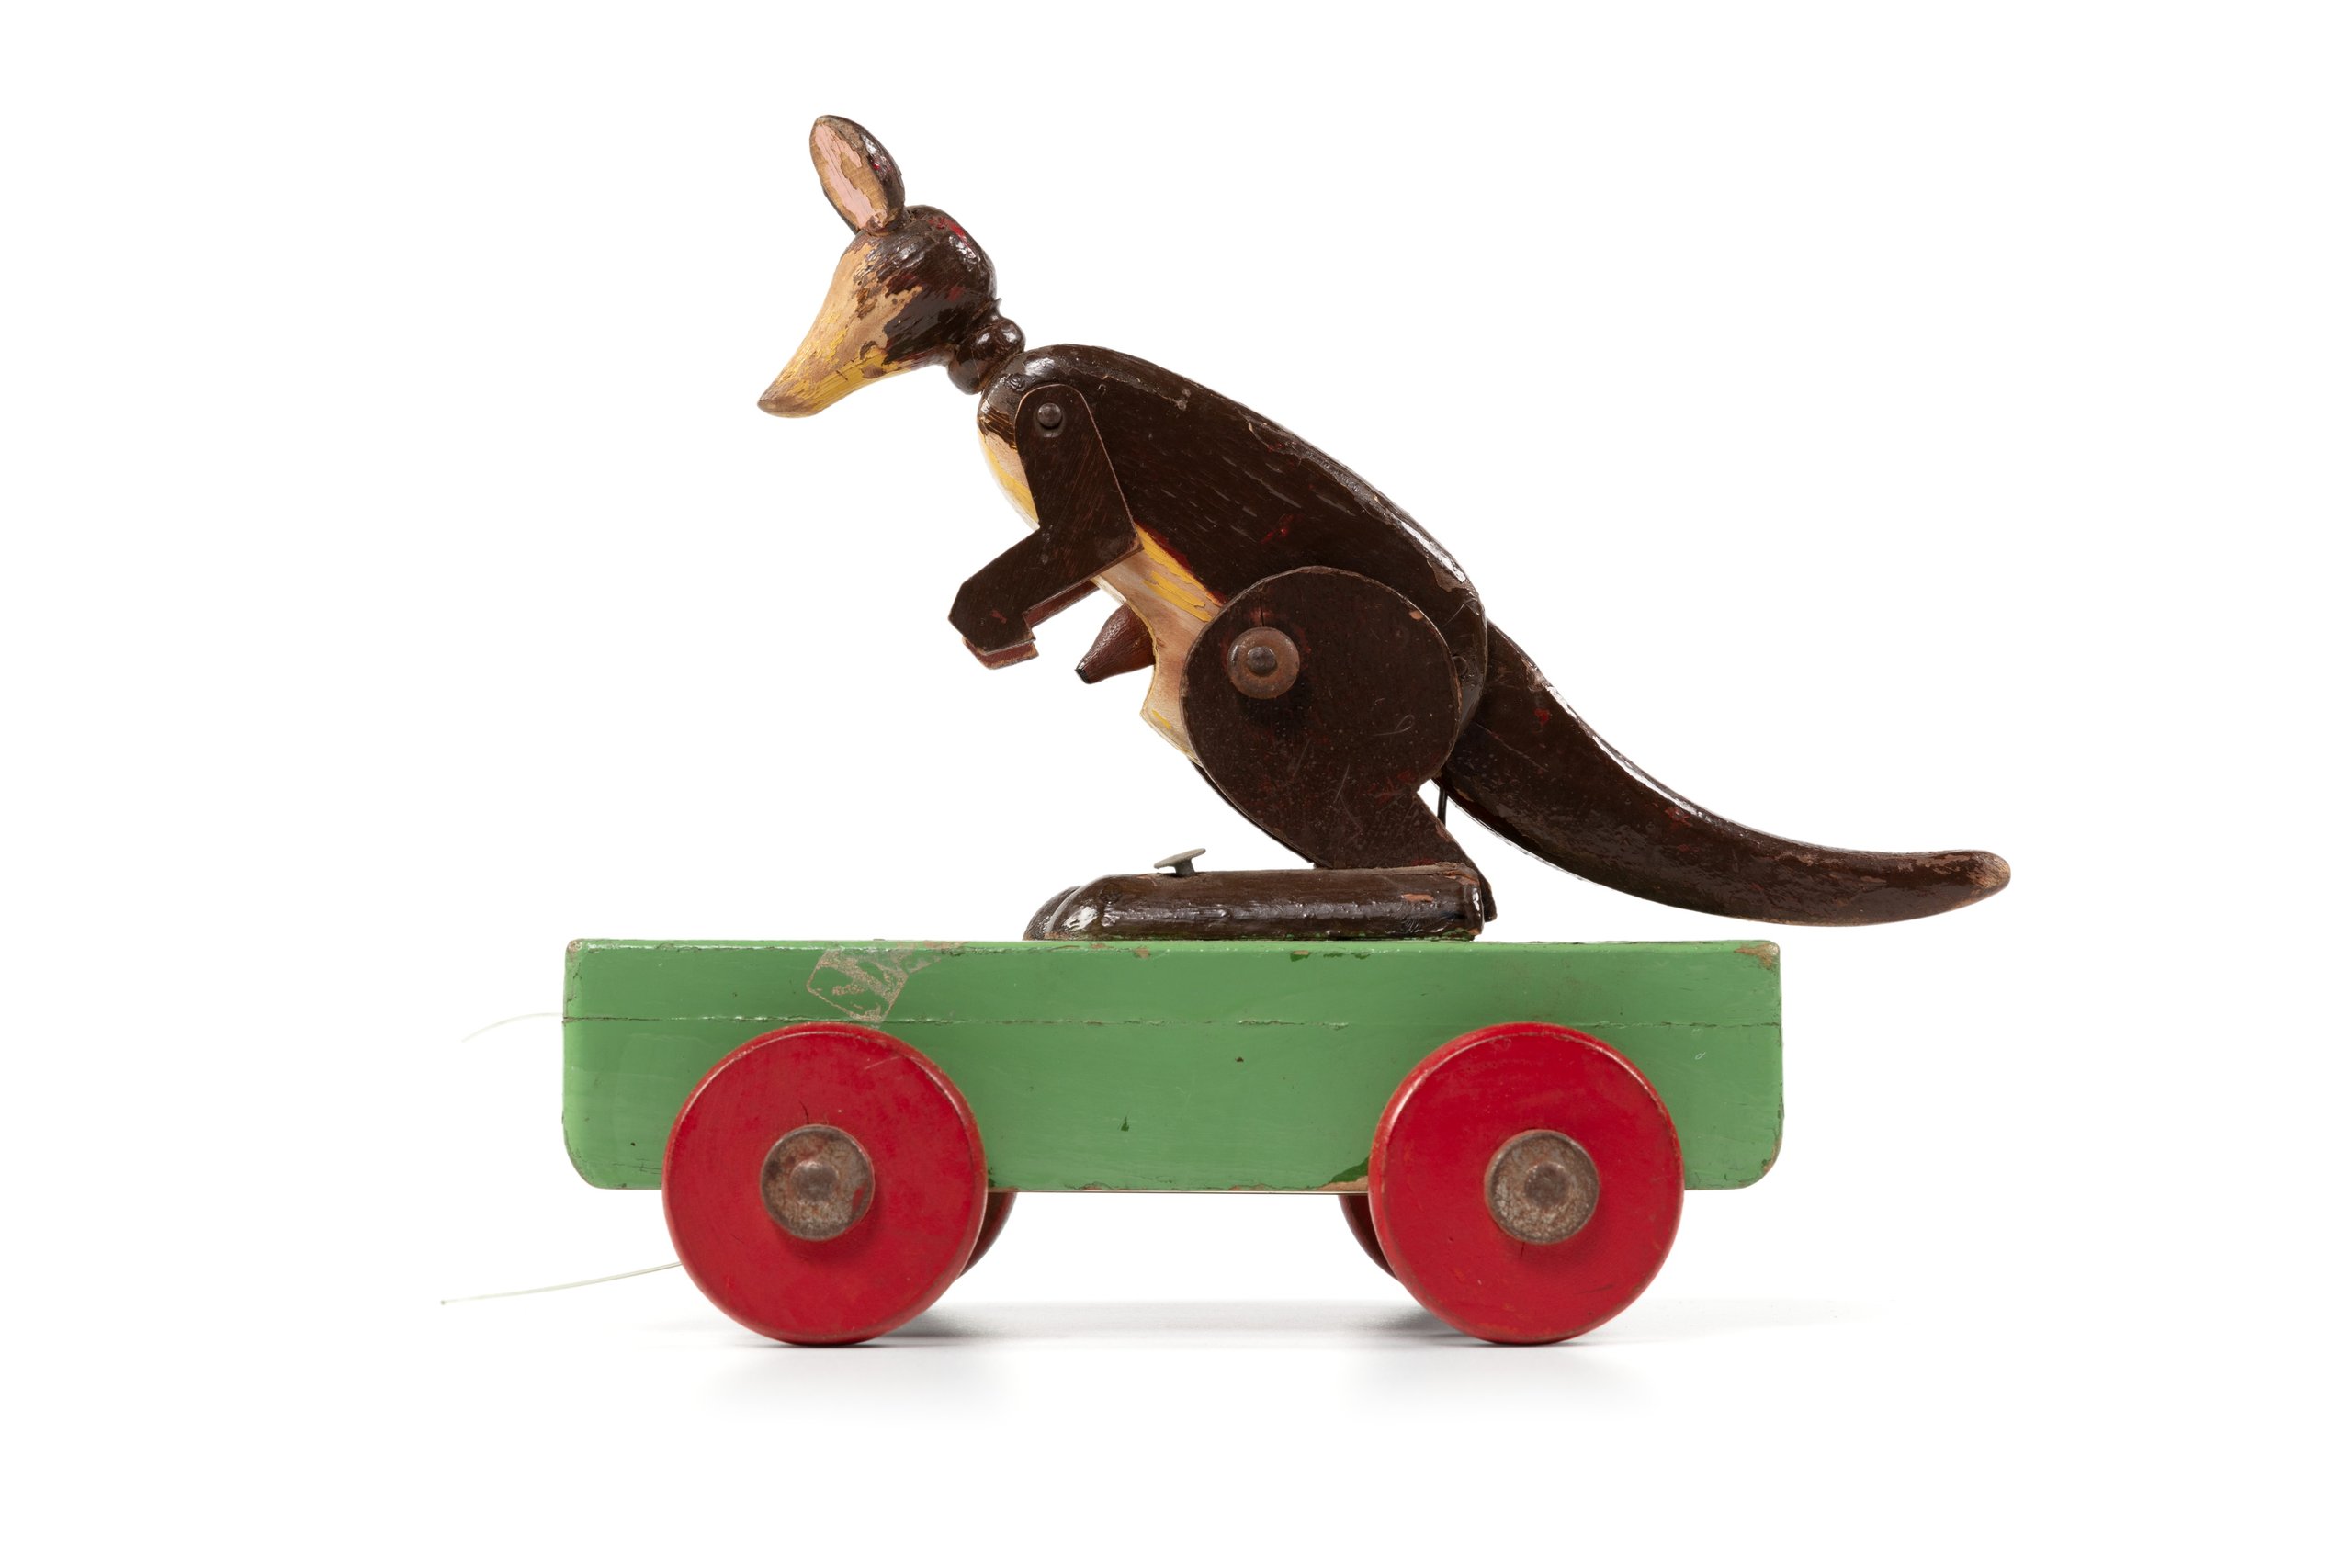 Pull-along toy kangaroo